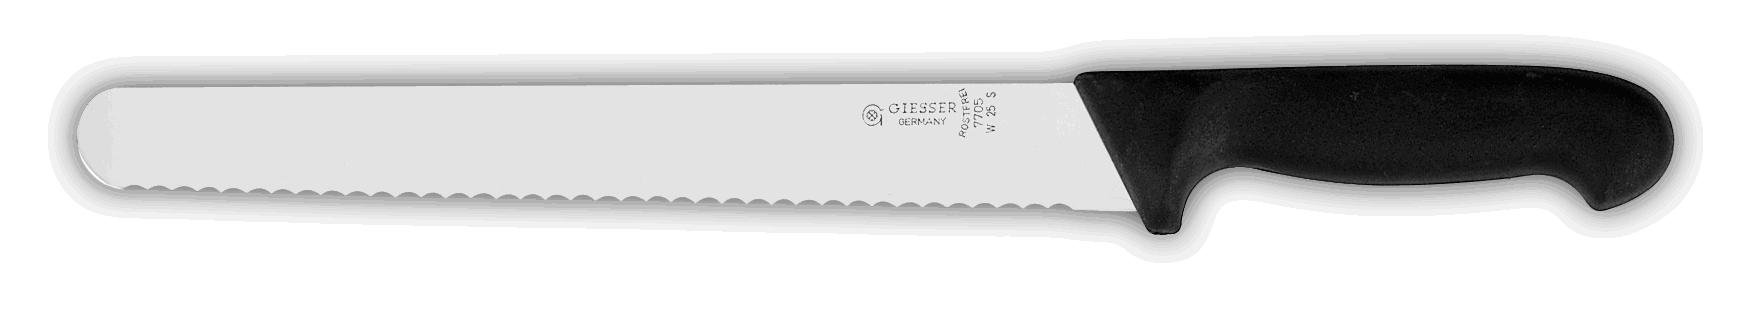 Giesser seit 1776 - Made in Germany - Schinkenmesser schwarz, Basic Black, Klinge 25 cm, Wellenschliff, rutschfest, scharfes Wurstmesser spülmaschinenfest, rostfrei